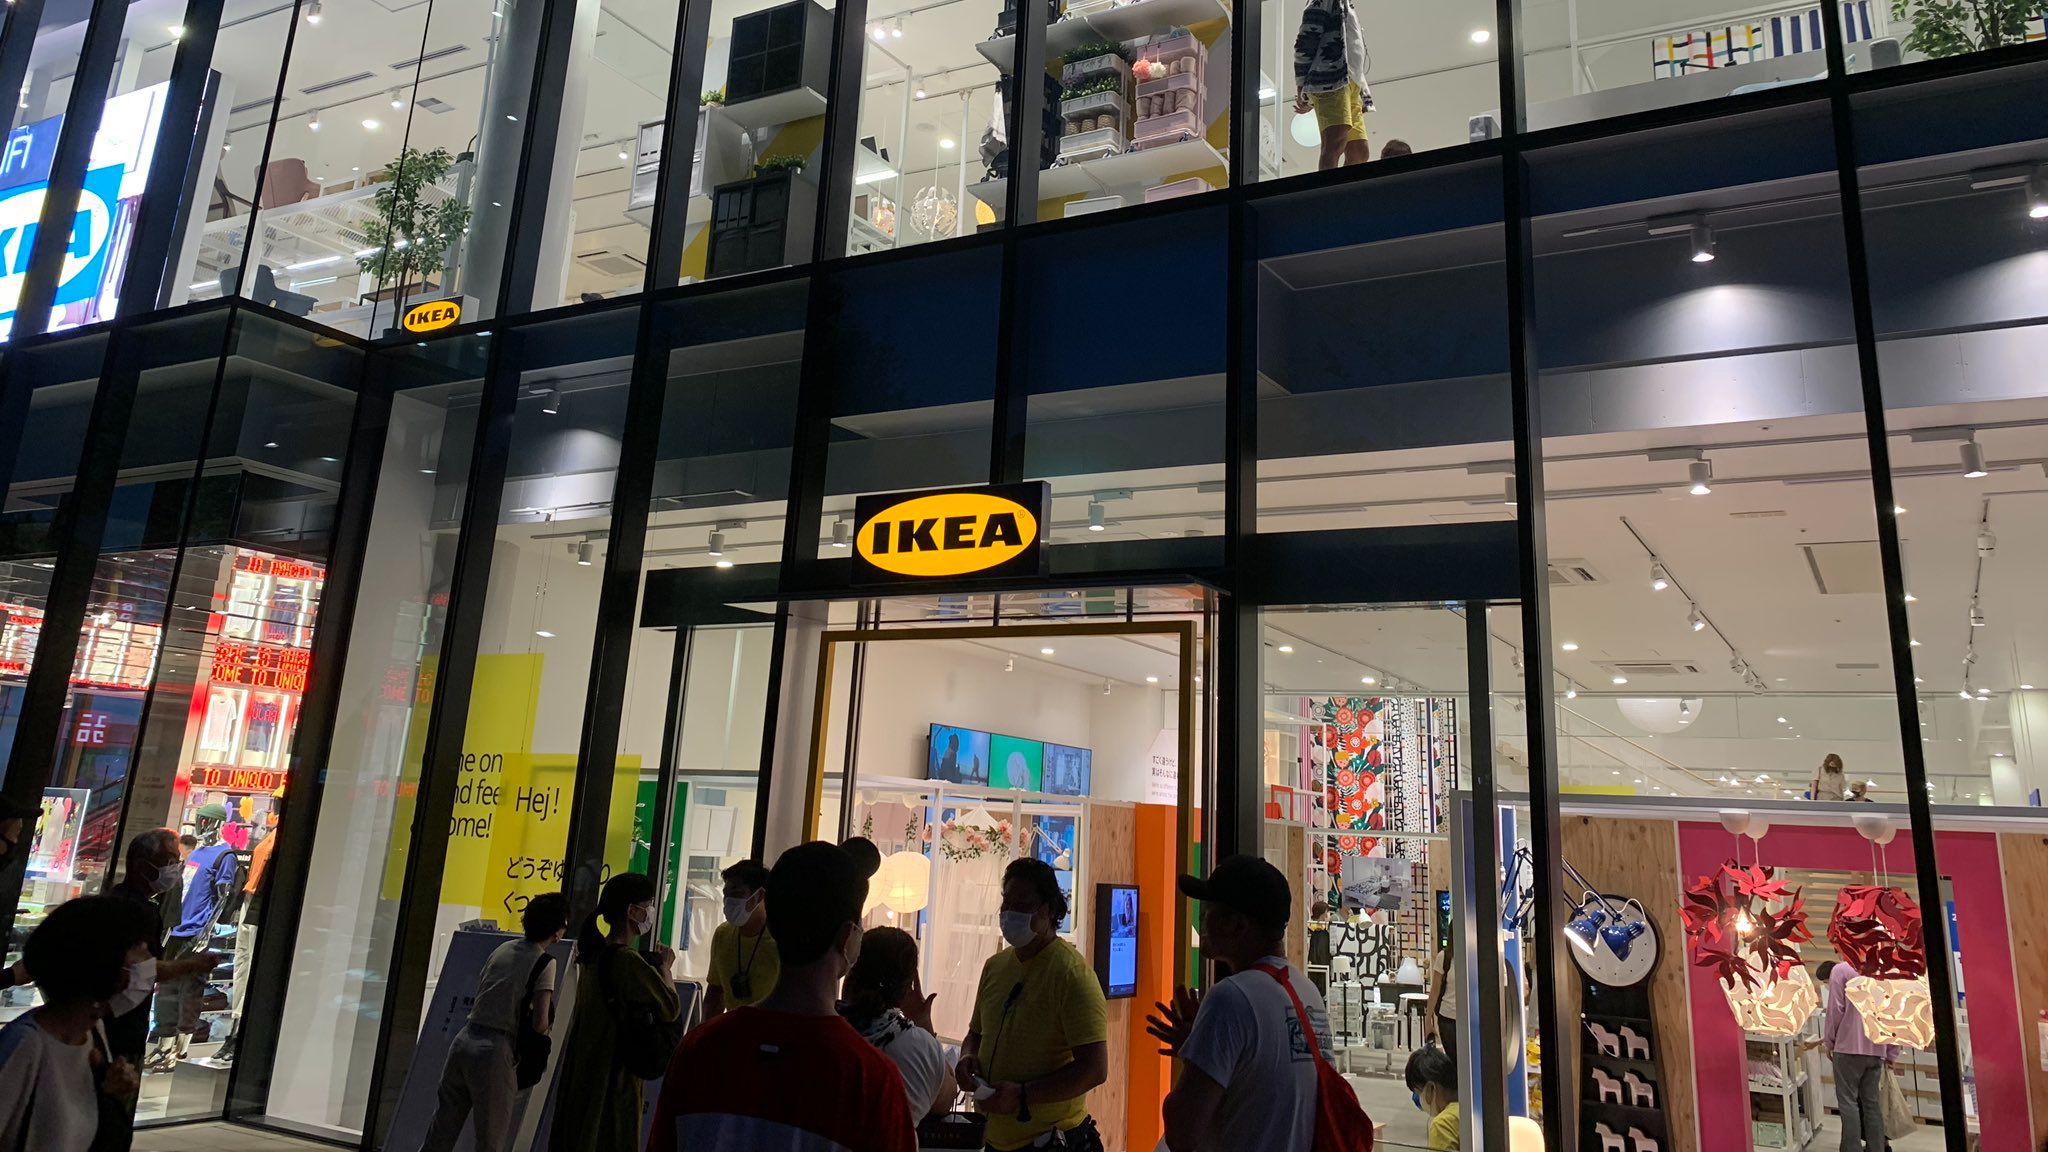 Éjjel-nappali kisboltot nyitott az IKEA